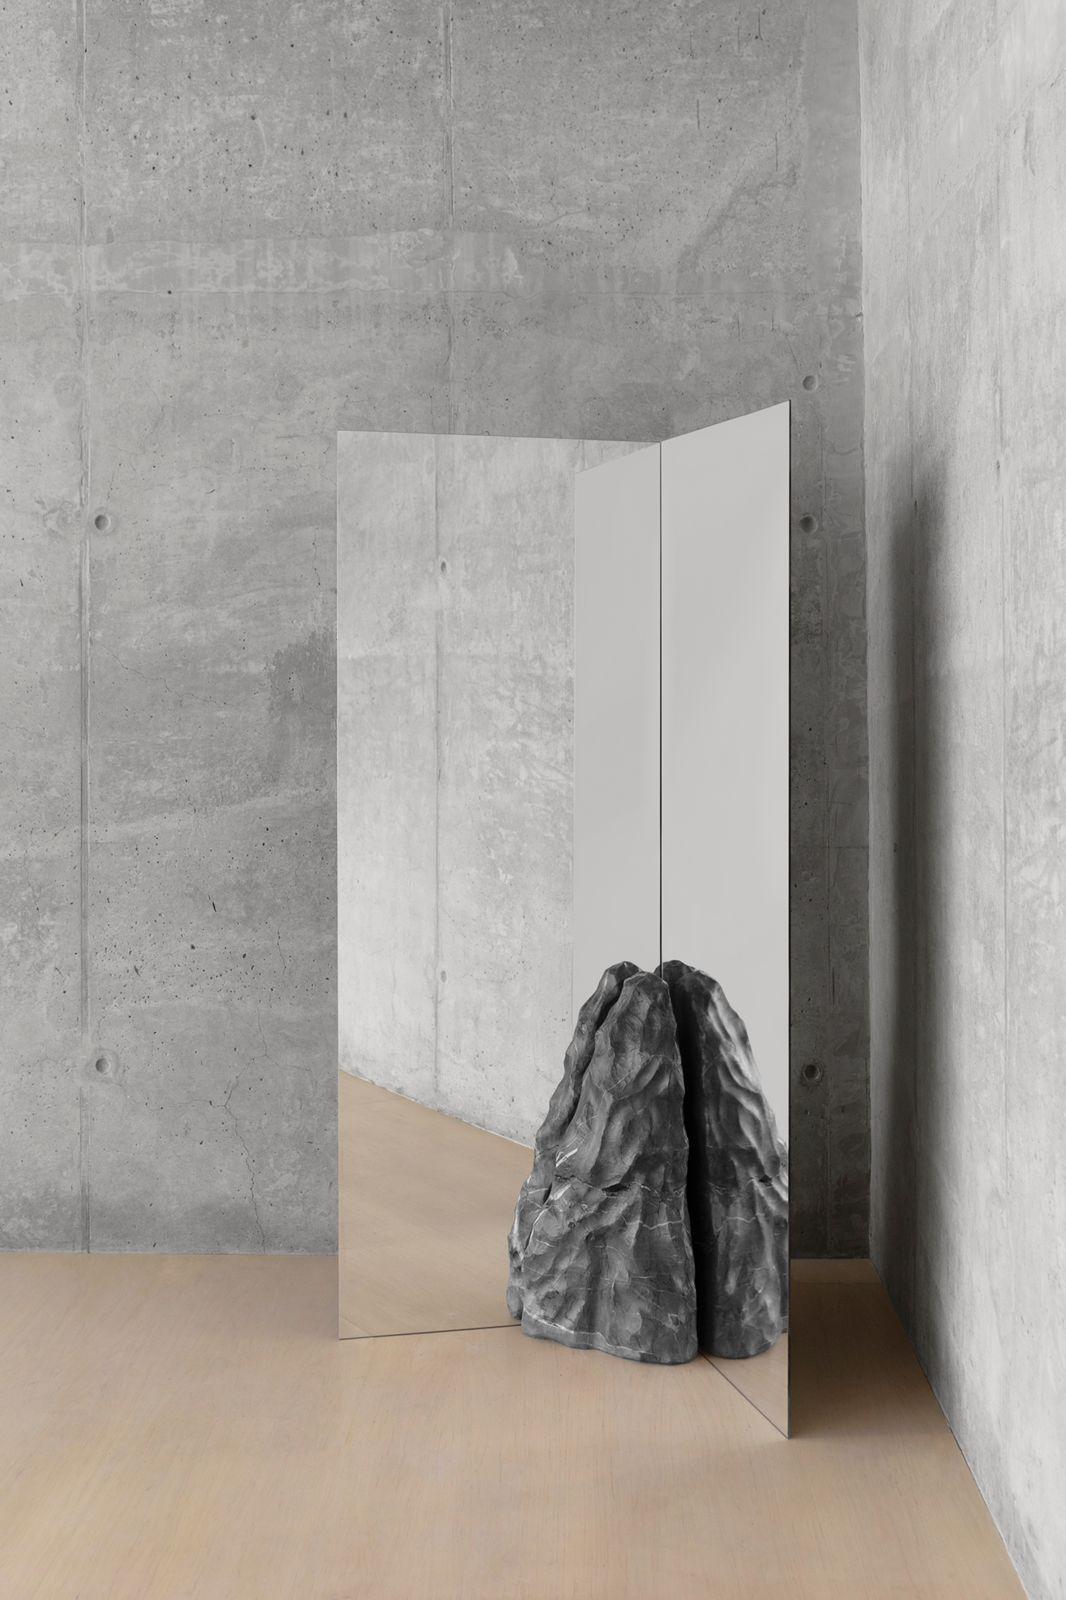 Divergente Doppelspiegel von Andres Monnier.
Einzigartig
Abmessungen: B 100 x L 80 x H 180 cm.
MATERIALIEN: Grauer Bruchstein, Glas (Spiegel).

Das Stück wurde von einer konvergenten Plattengrenze inspiriert, d. h. von der Stelle, an der sich zwei